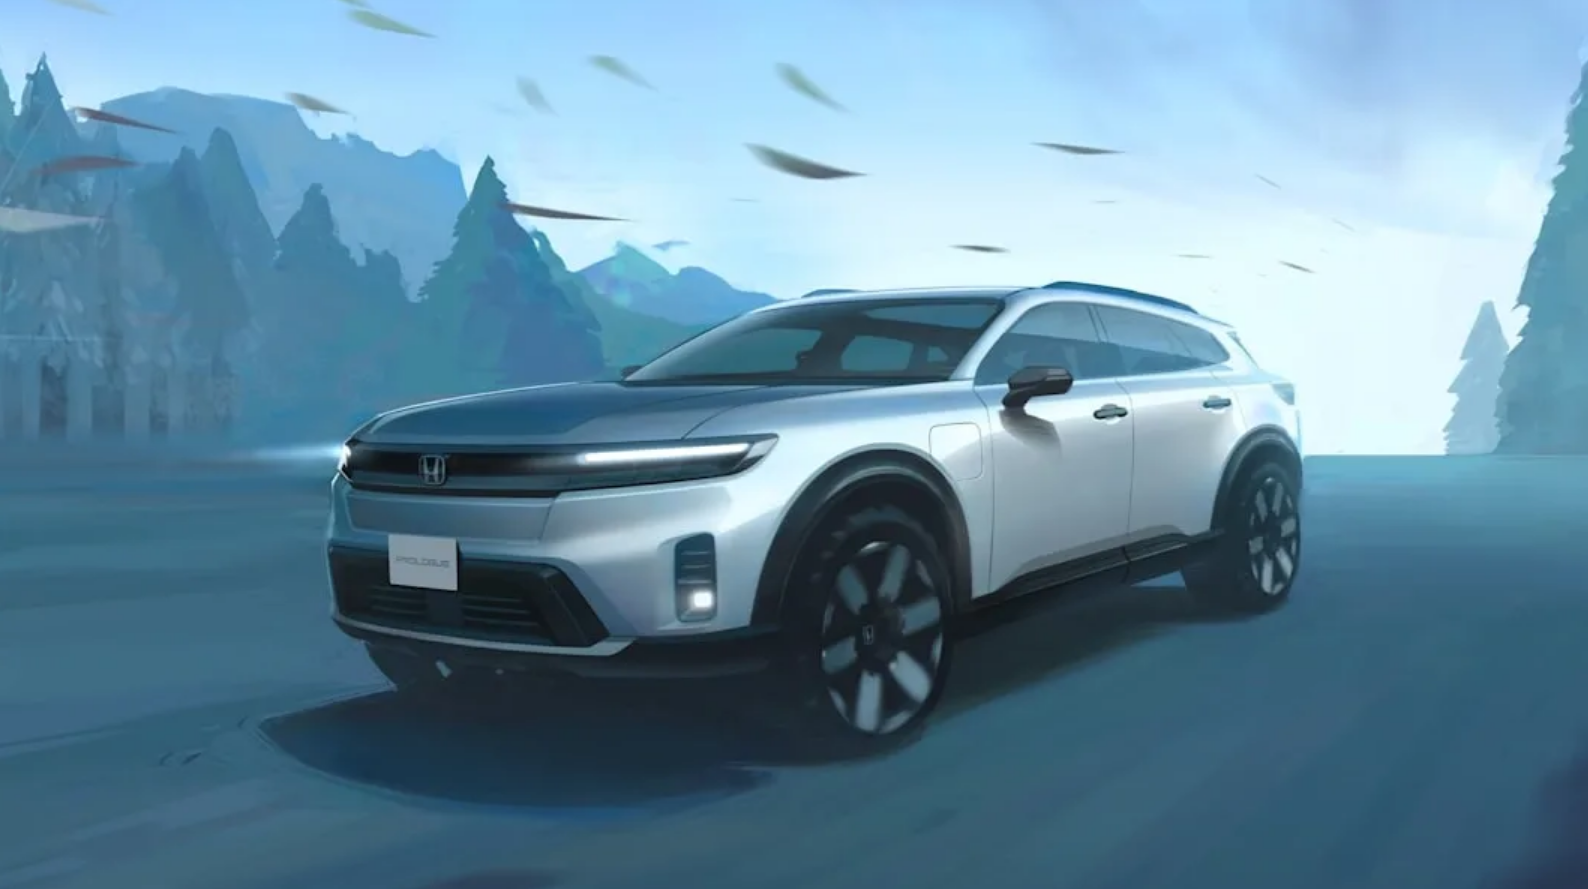 Honda เผยโฉม SUV ไฟฟ้า Honda Prolouge และแผนการพัฒนารถยนต์ไฟฟ้าที่ต่อคิวอยู่ 30 รุ่น